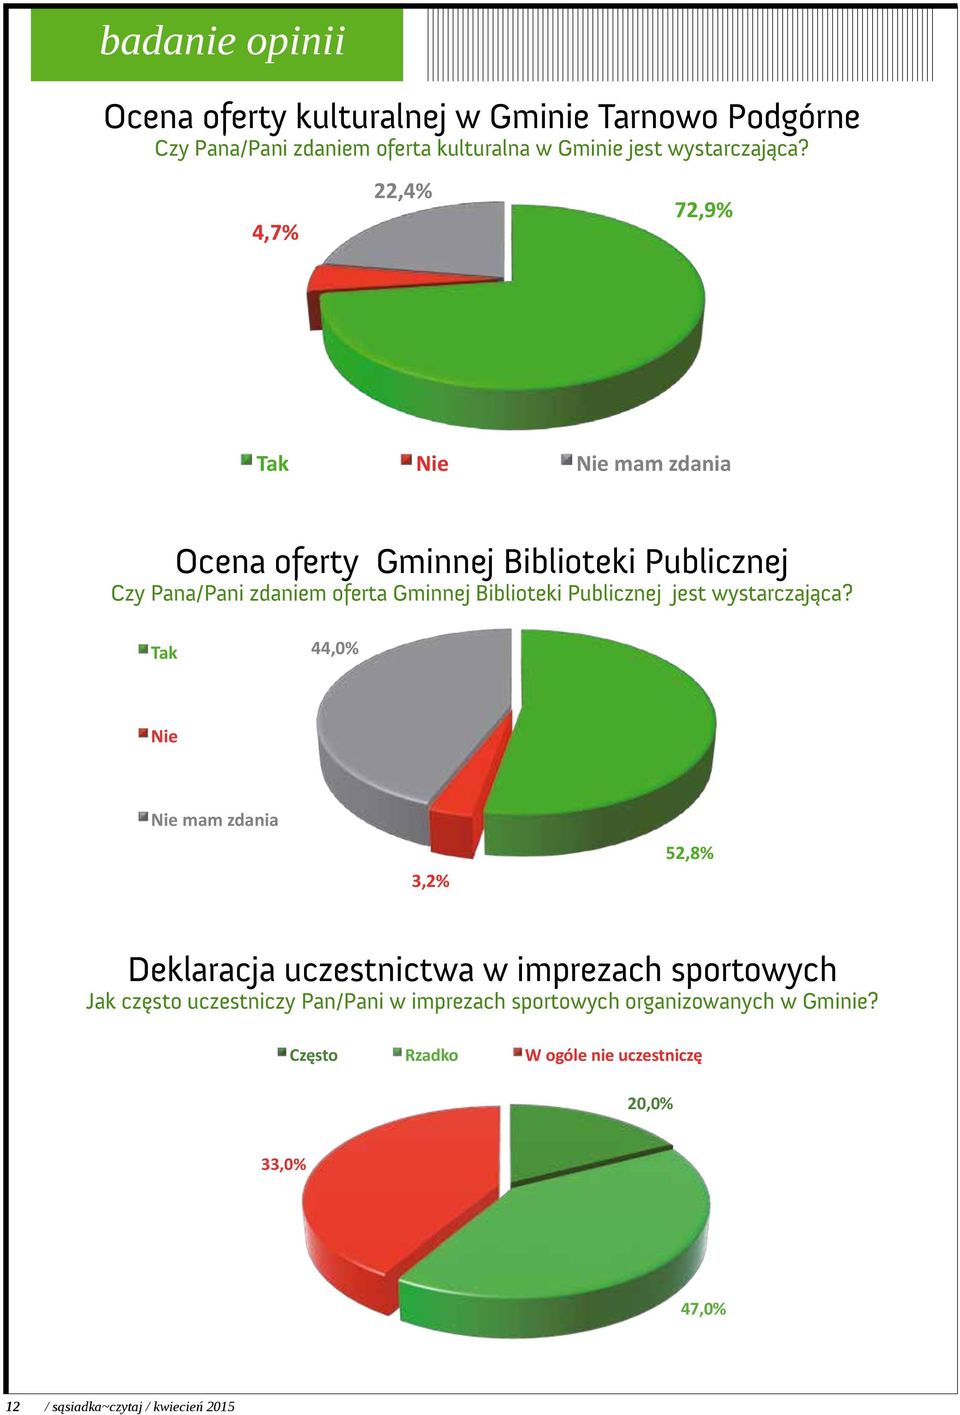 4,7% 22,4% 72,9% Tak Nie Nie mam zdania Źródło: Opracowanie własne na podstawie badań przeprowadzonych w gminie Tarnowo Podgórne, marzec 2015r. Wykres nr 14.